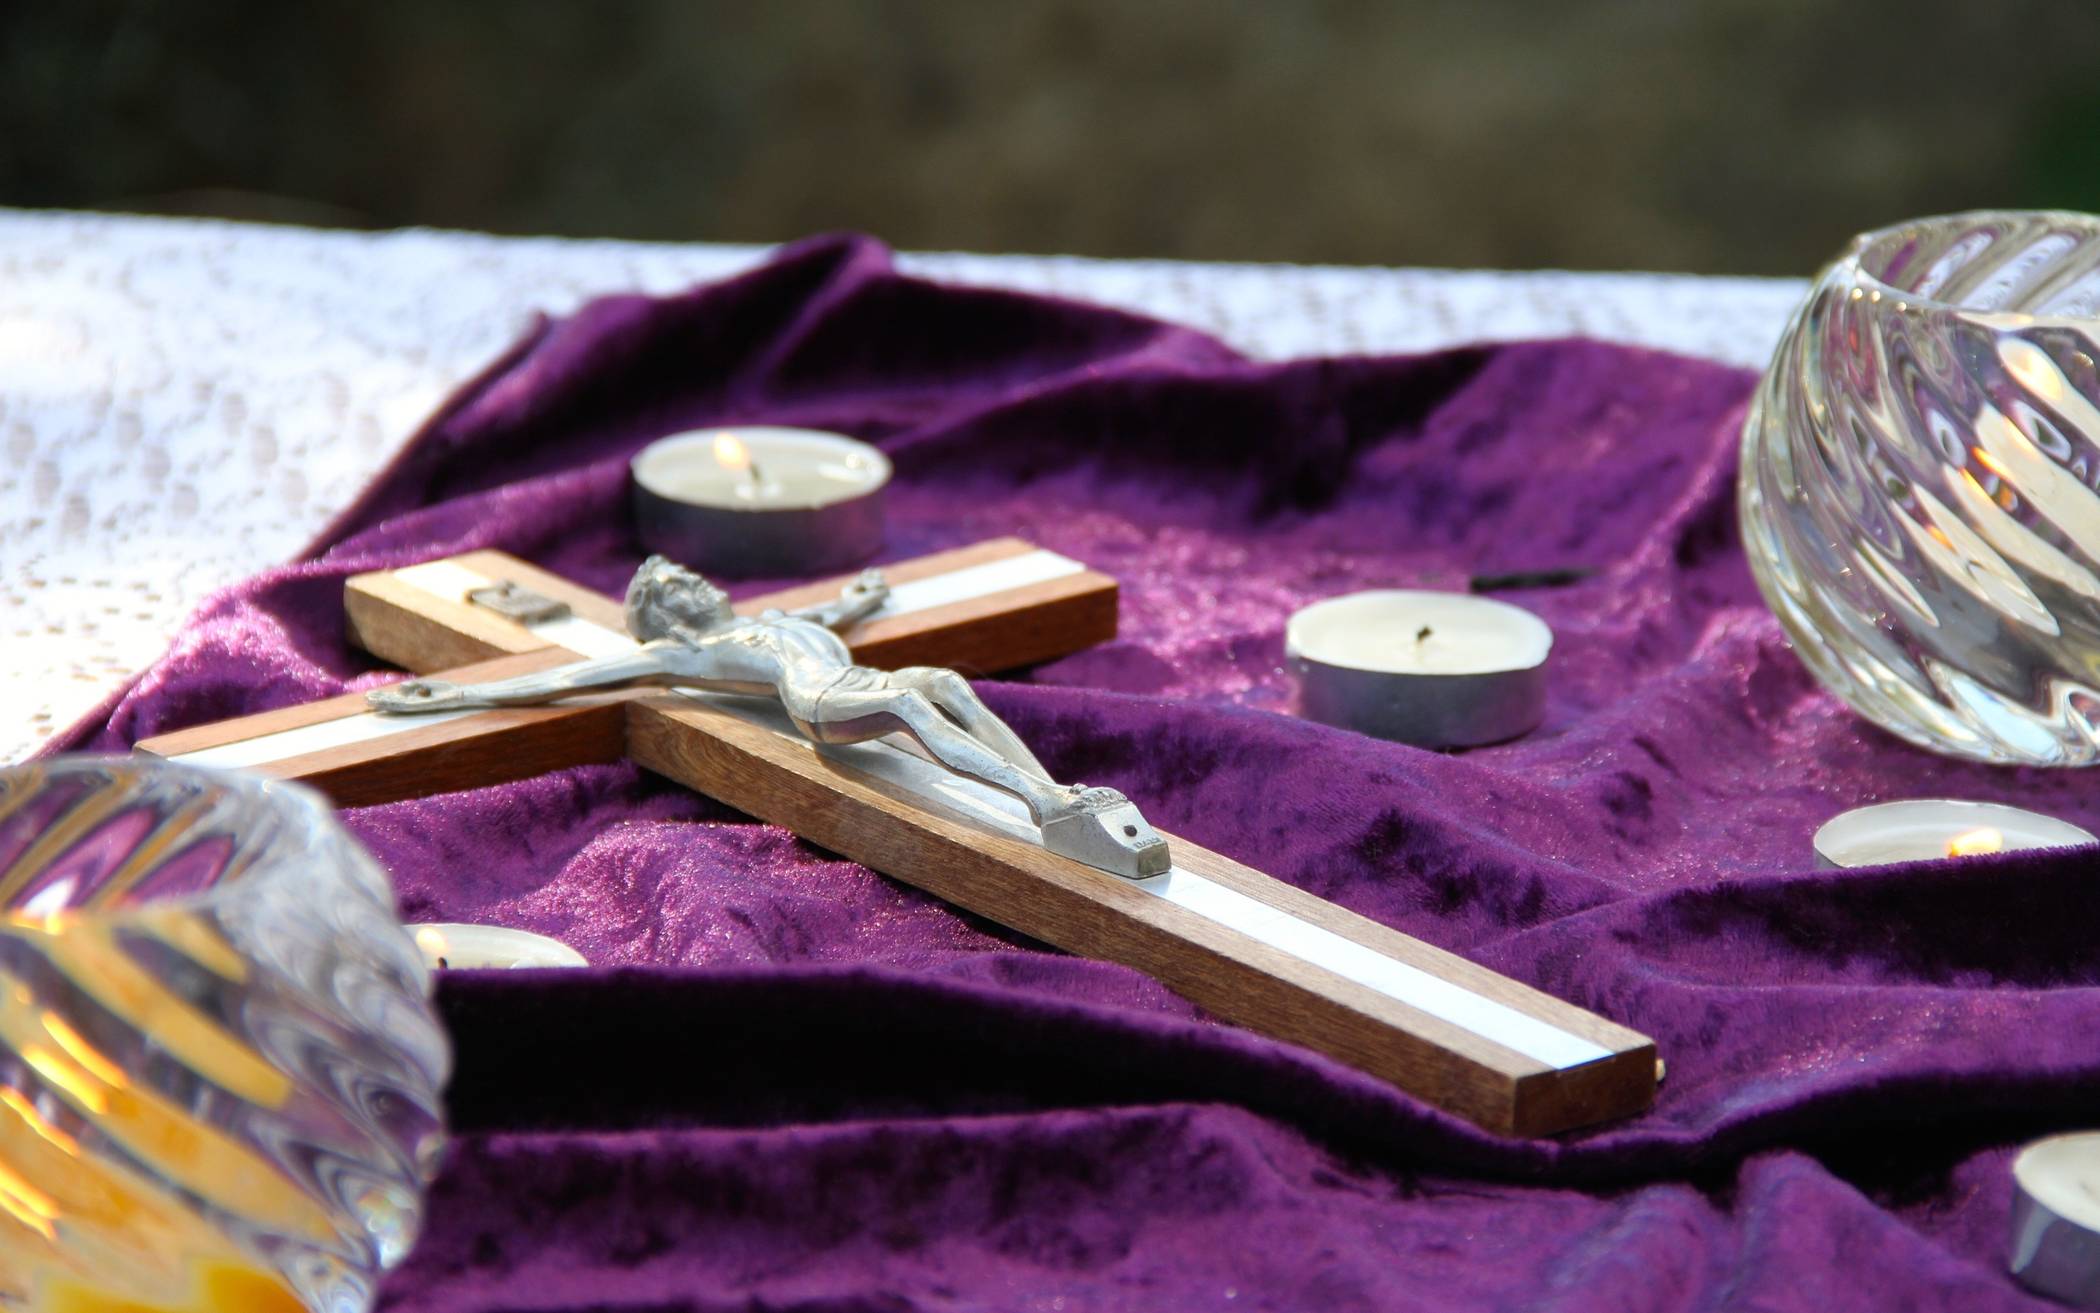 Kreuze (vor allem geweihte) gehören nicht auf den  Müll, sagt Noithausenes Pfarrgemeinderat.  